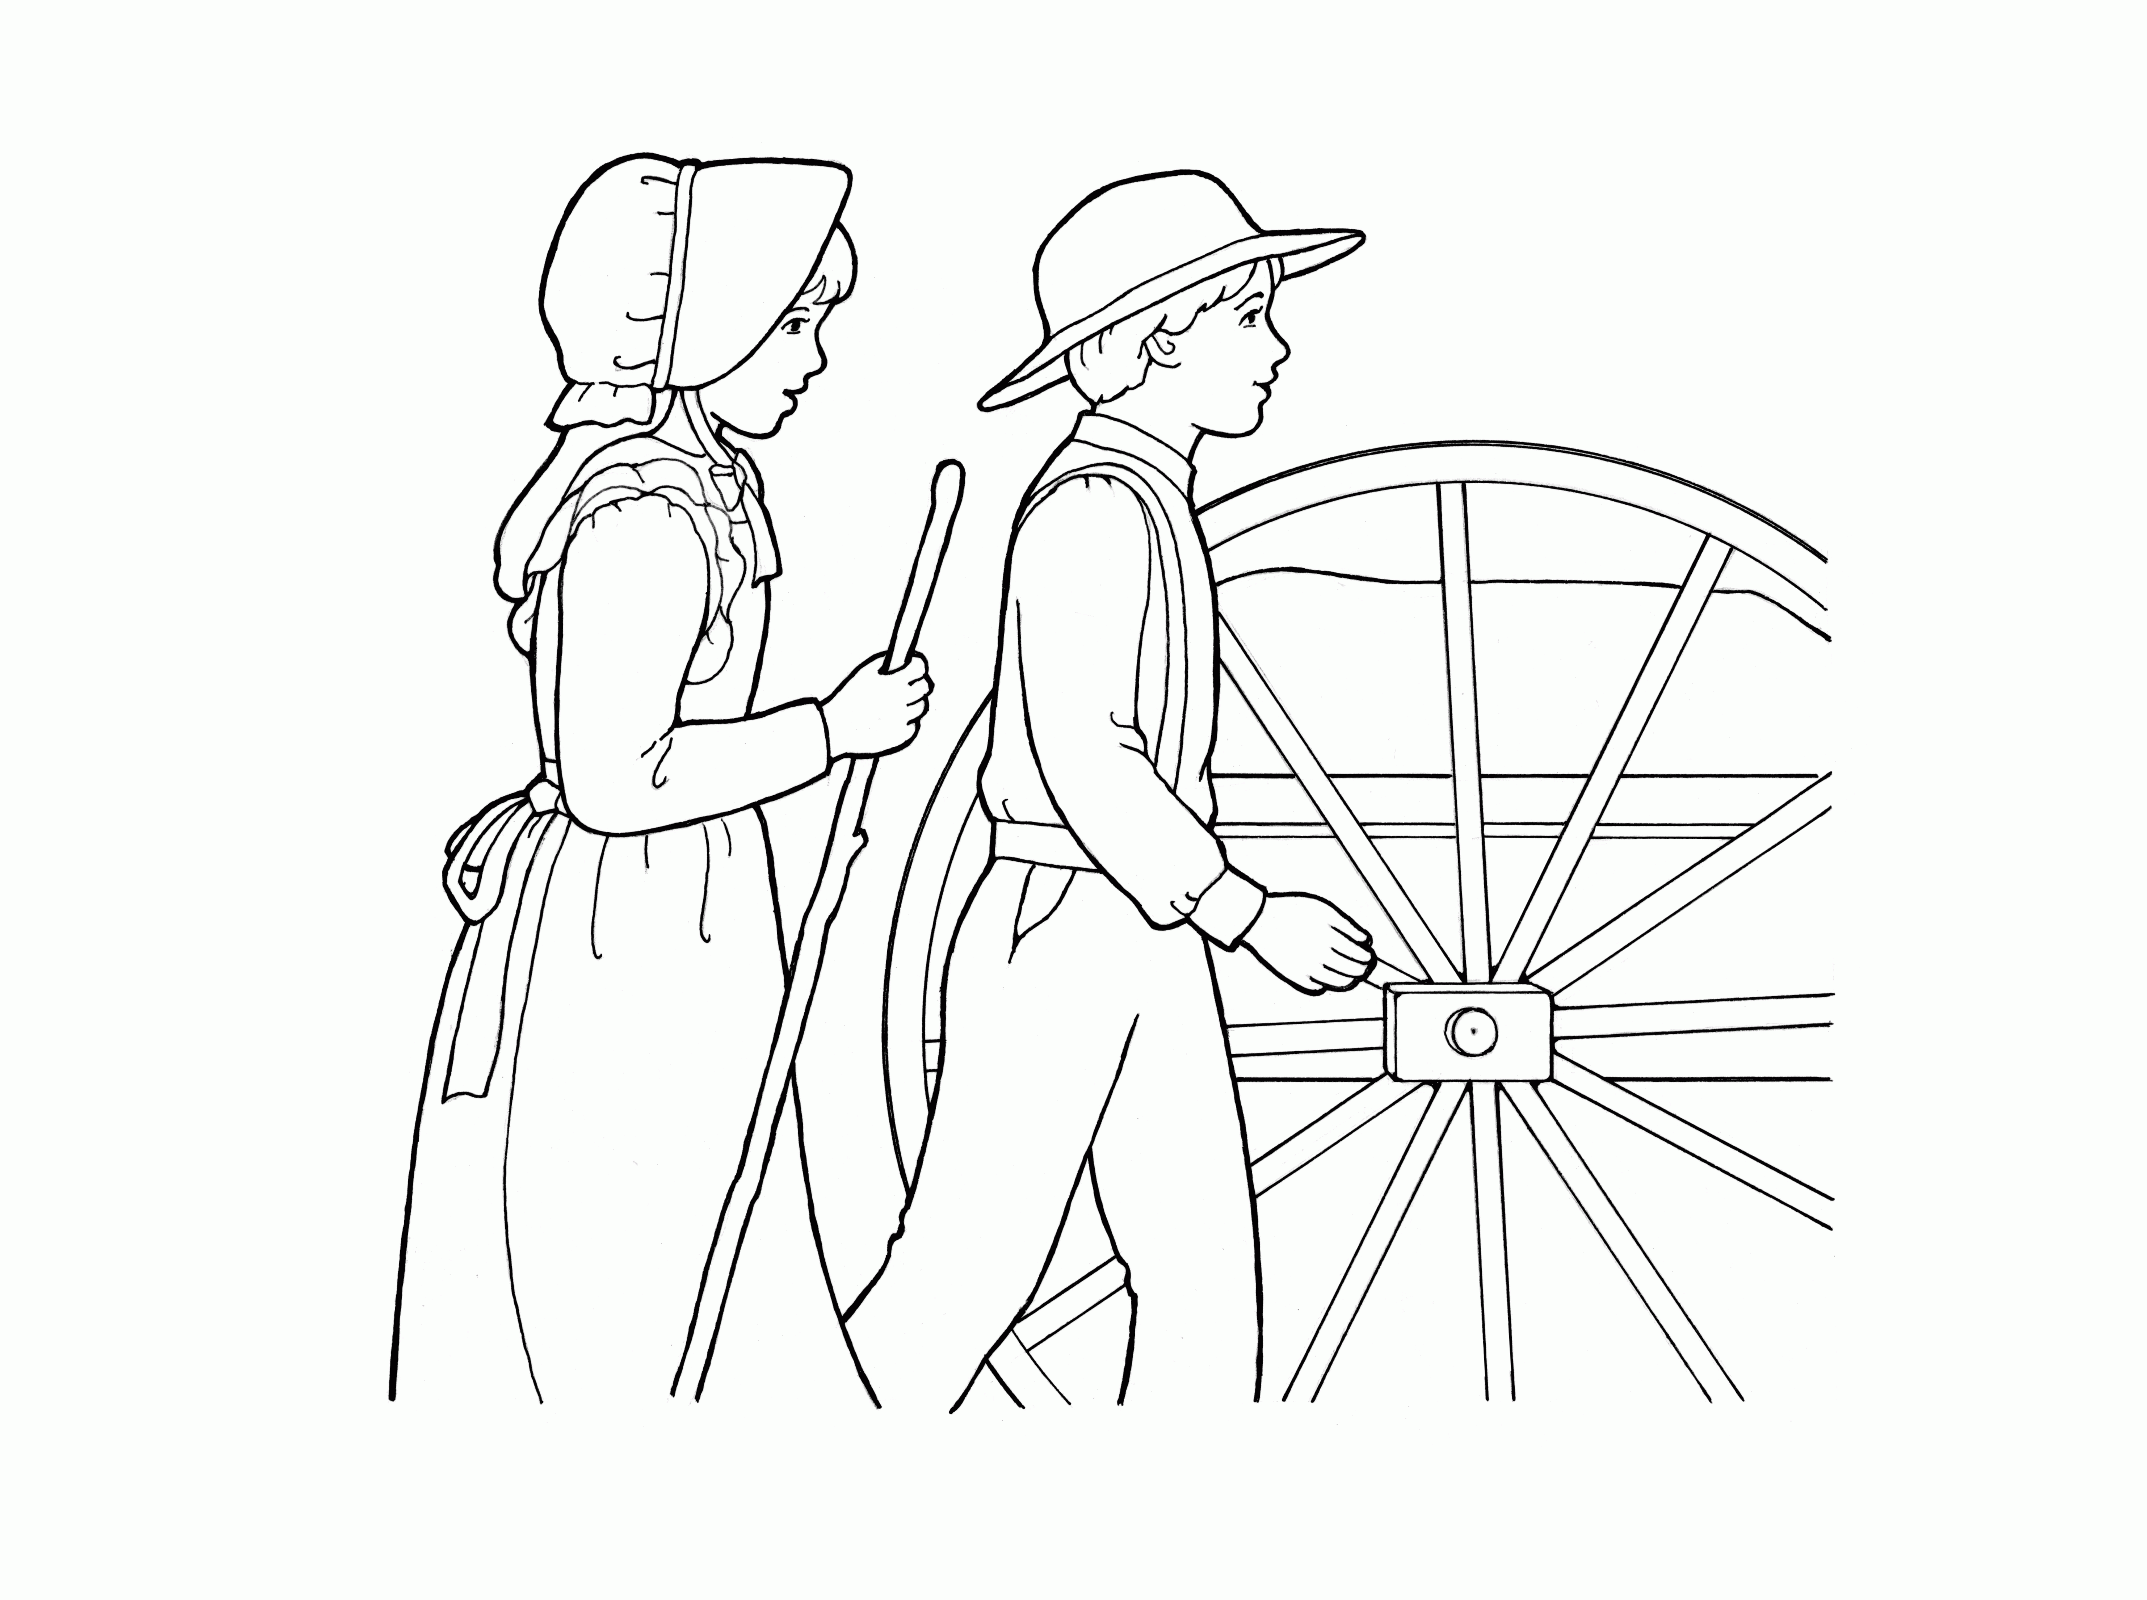 Pioneers Pulling a Handcart